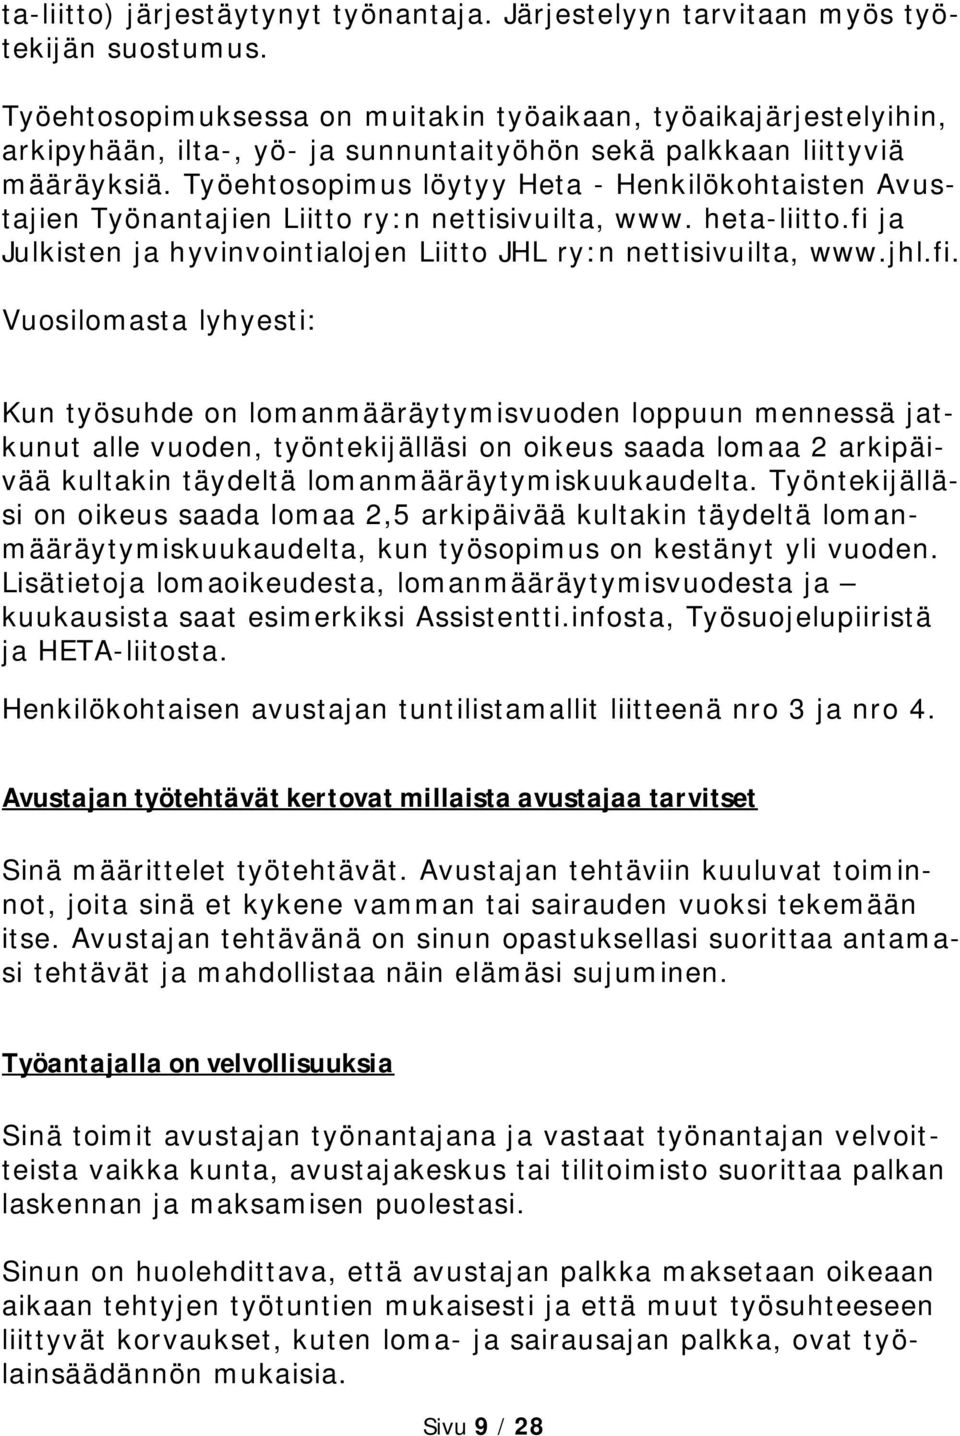 Työehtosopimus löytyy Heta - Henkilökohtaisten Avustajien Työnantajien Liitto ry:n nettisivuilta, www. heta-liitto.fi 